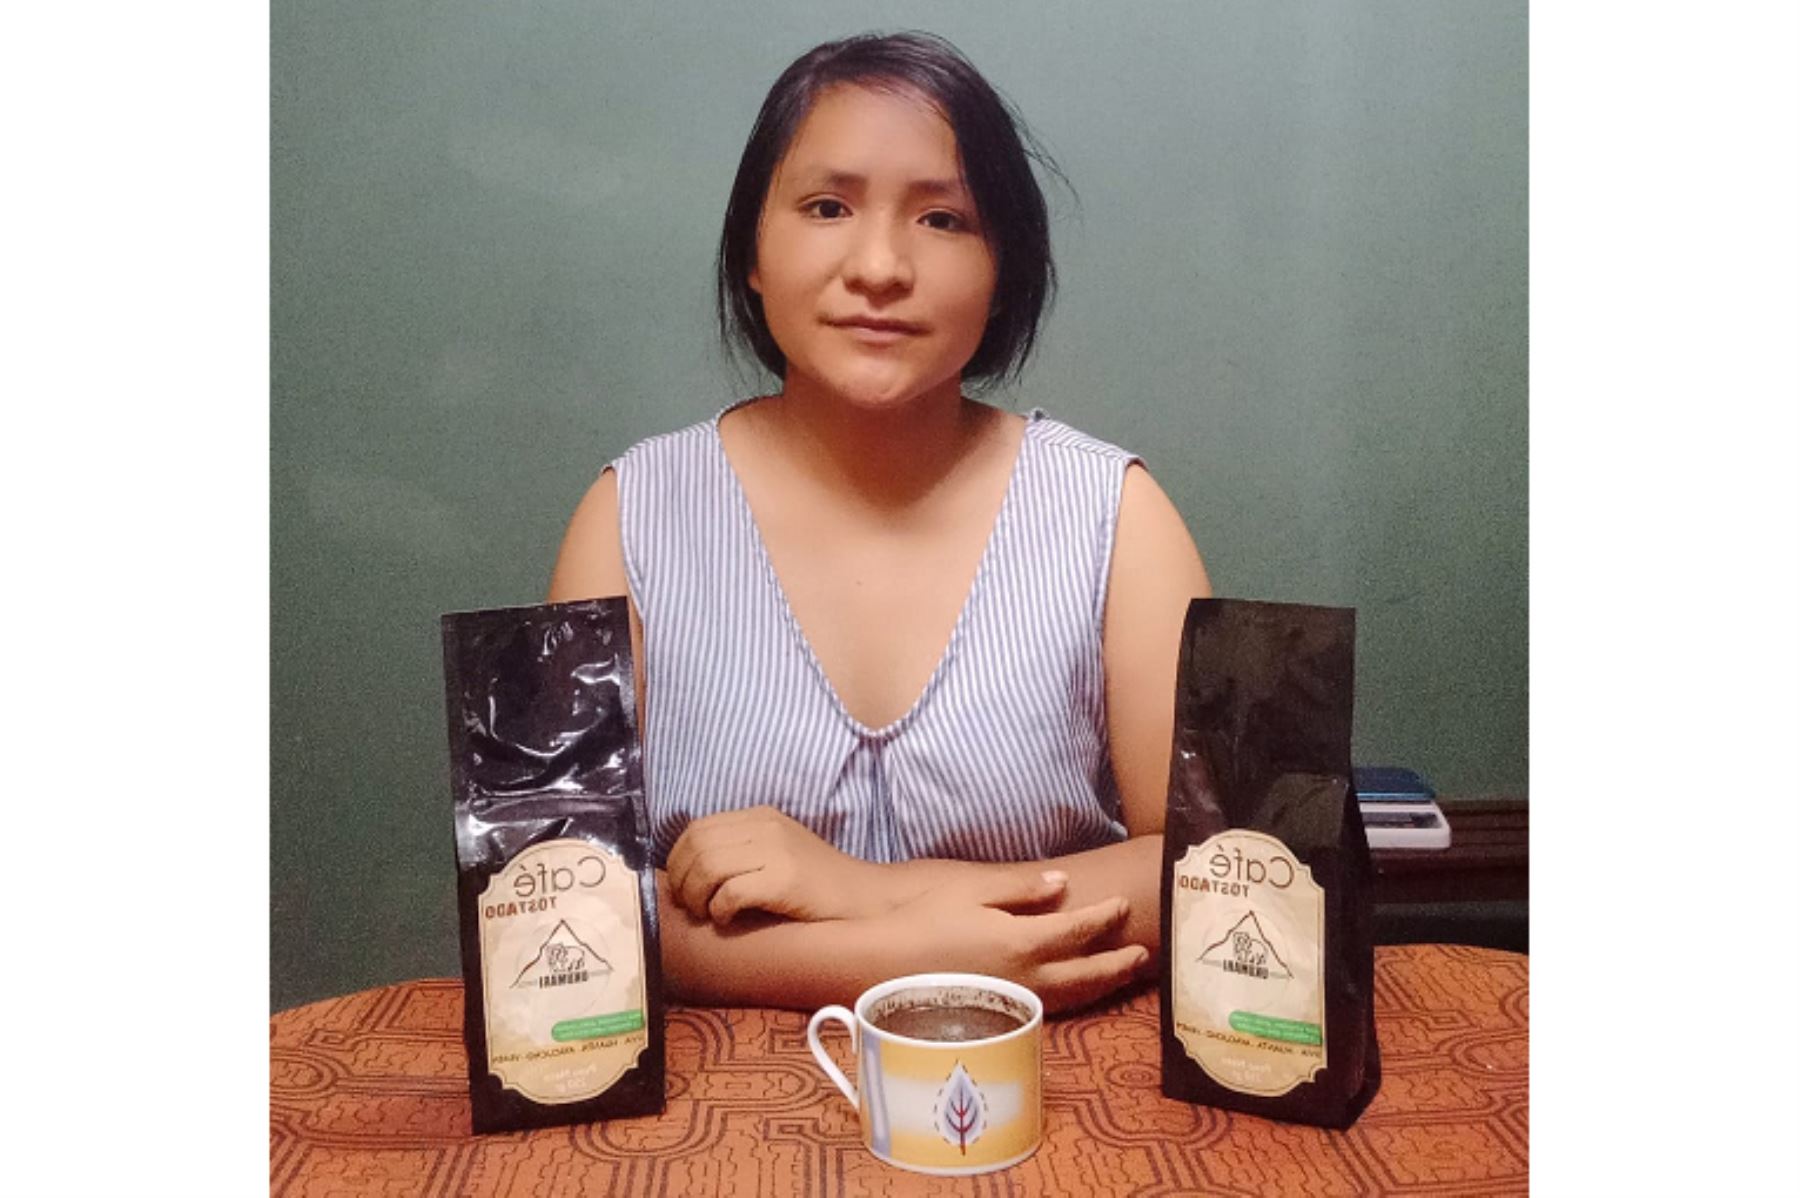 La ayacuchana Liz Sarayda Ramirez Quispe está transformando la historia de su comunidad y el café fue su gran inspiración. Foto: ANDINA/Difusión